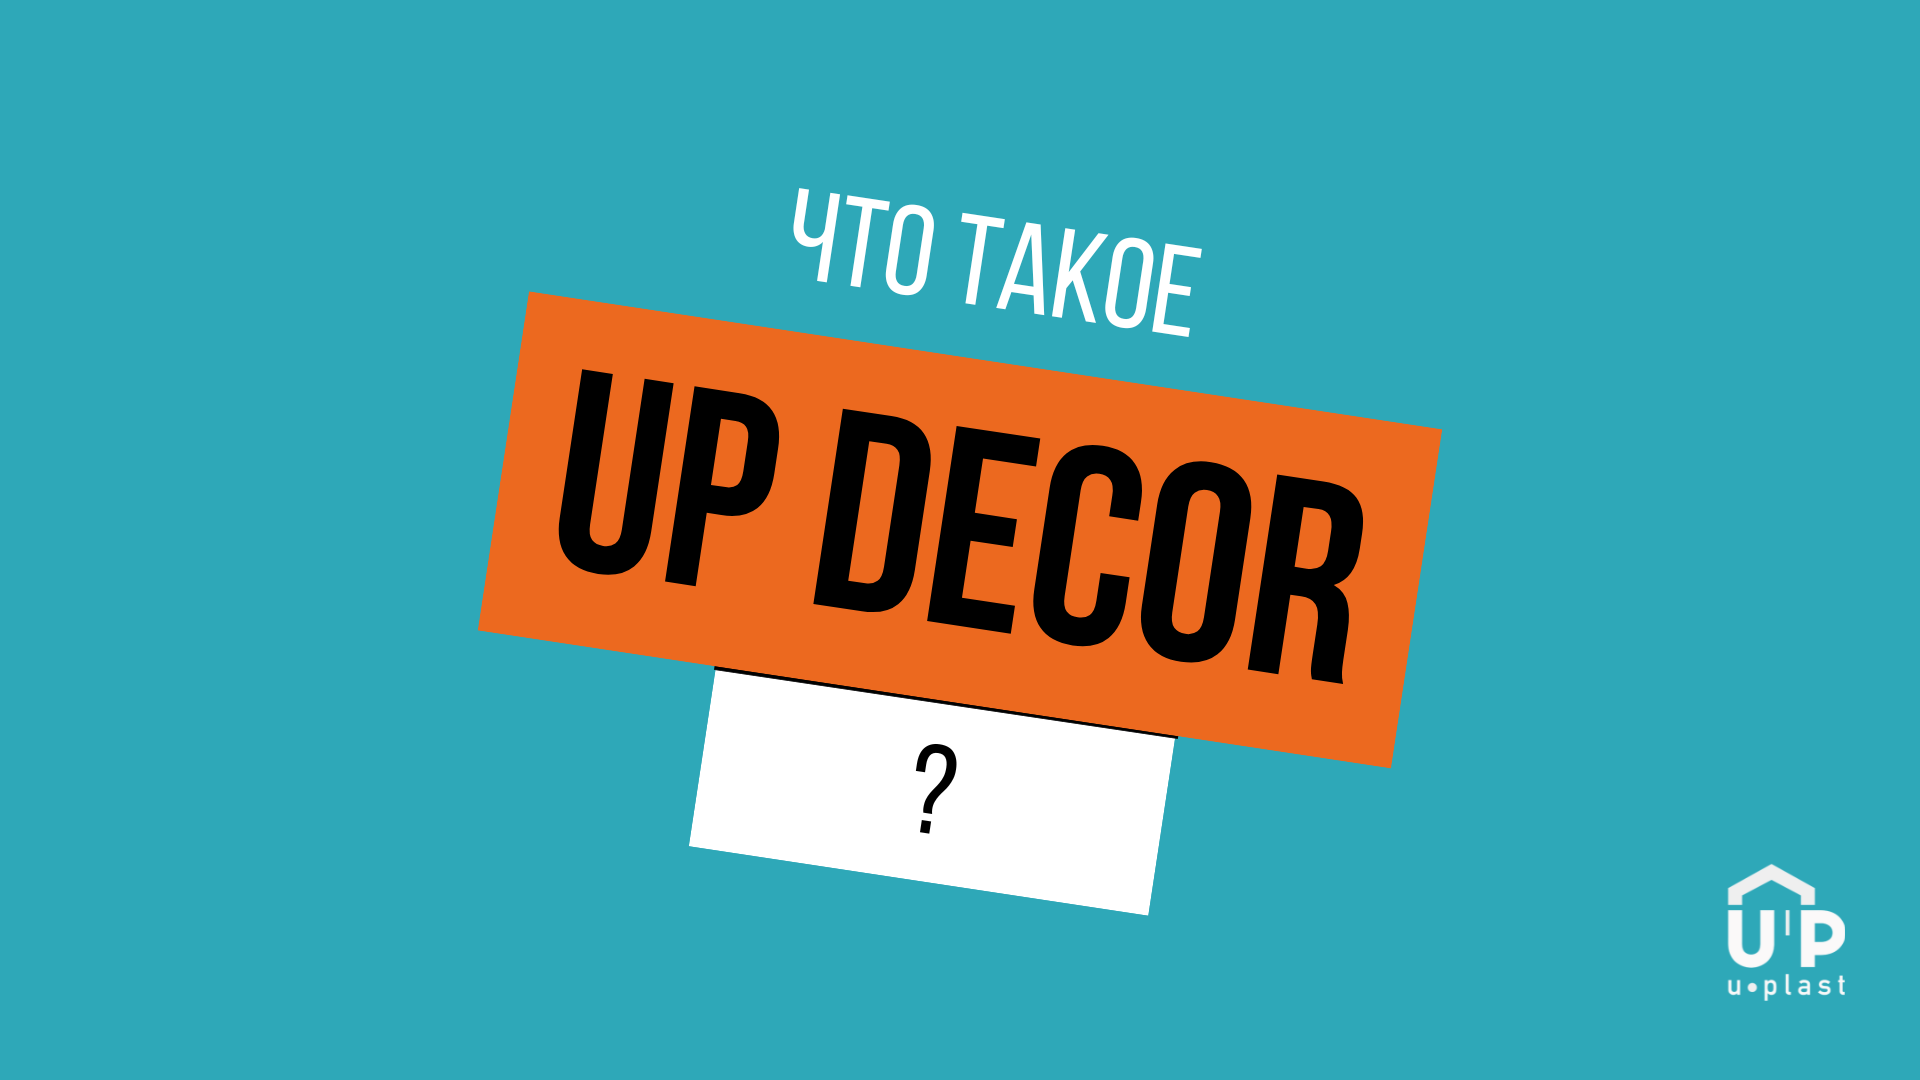 Вадима часто спрашивают: «Что такое UP Decor?»
Ответ в видео 💪🏻